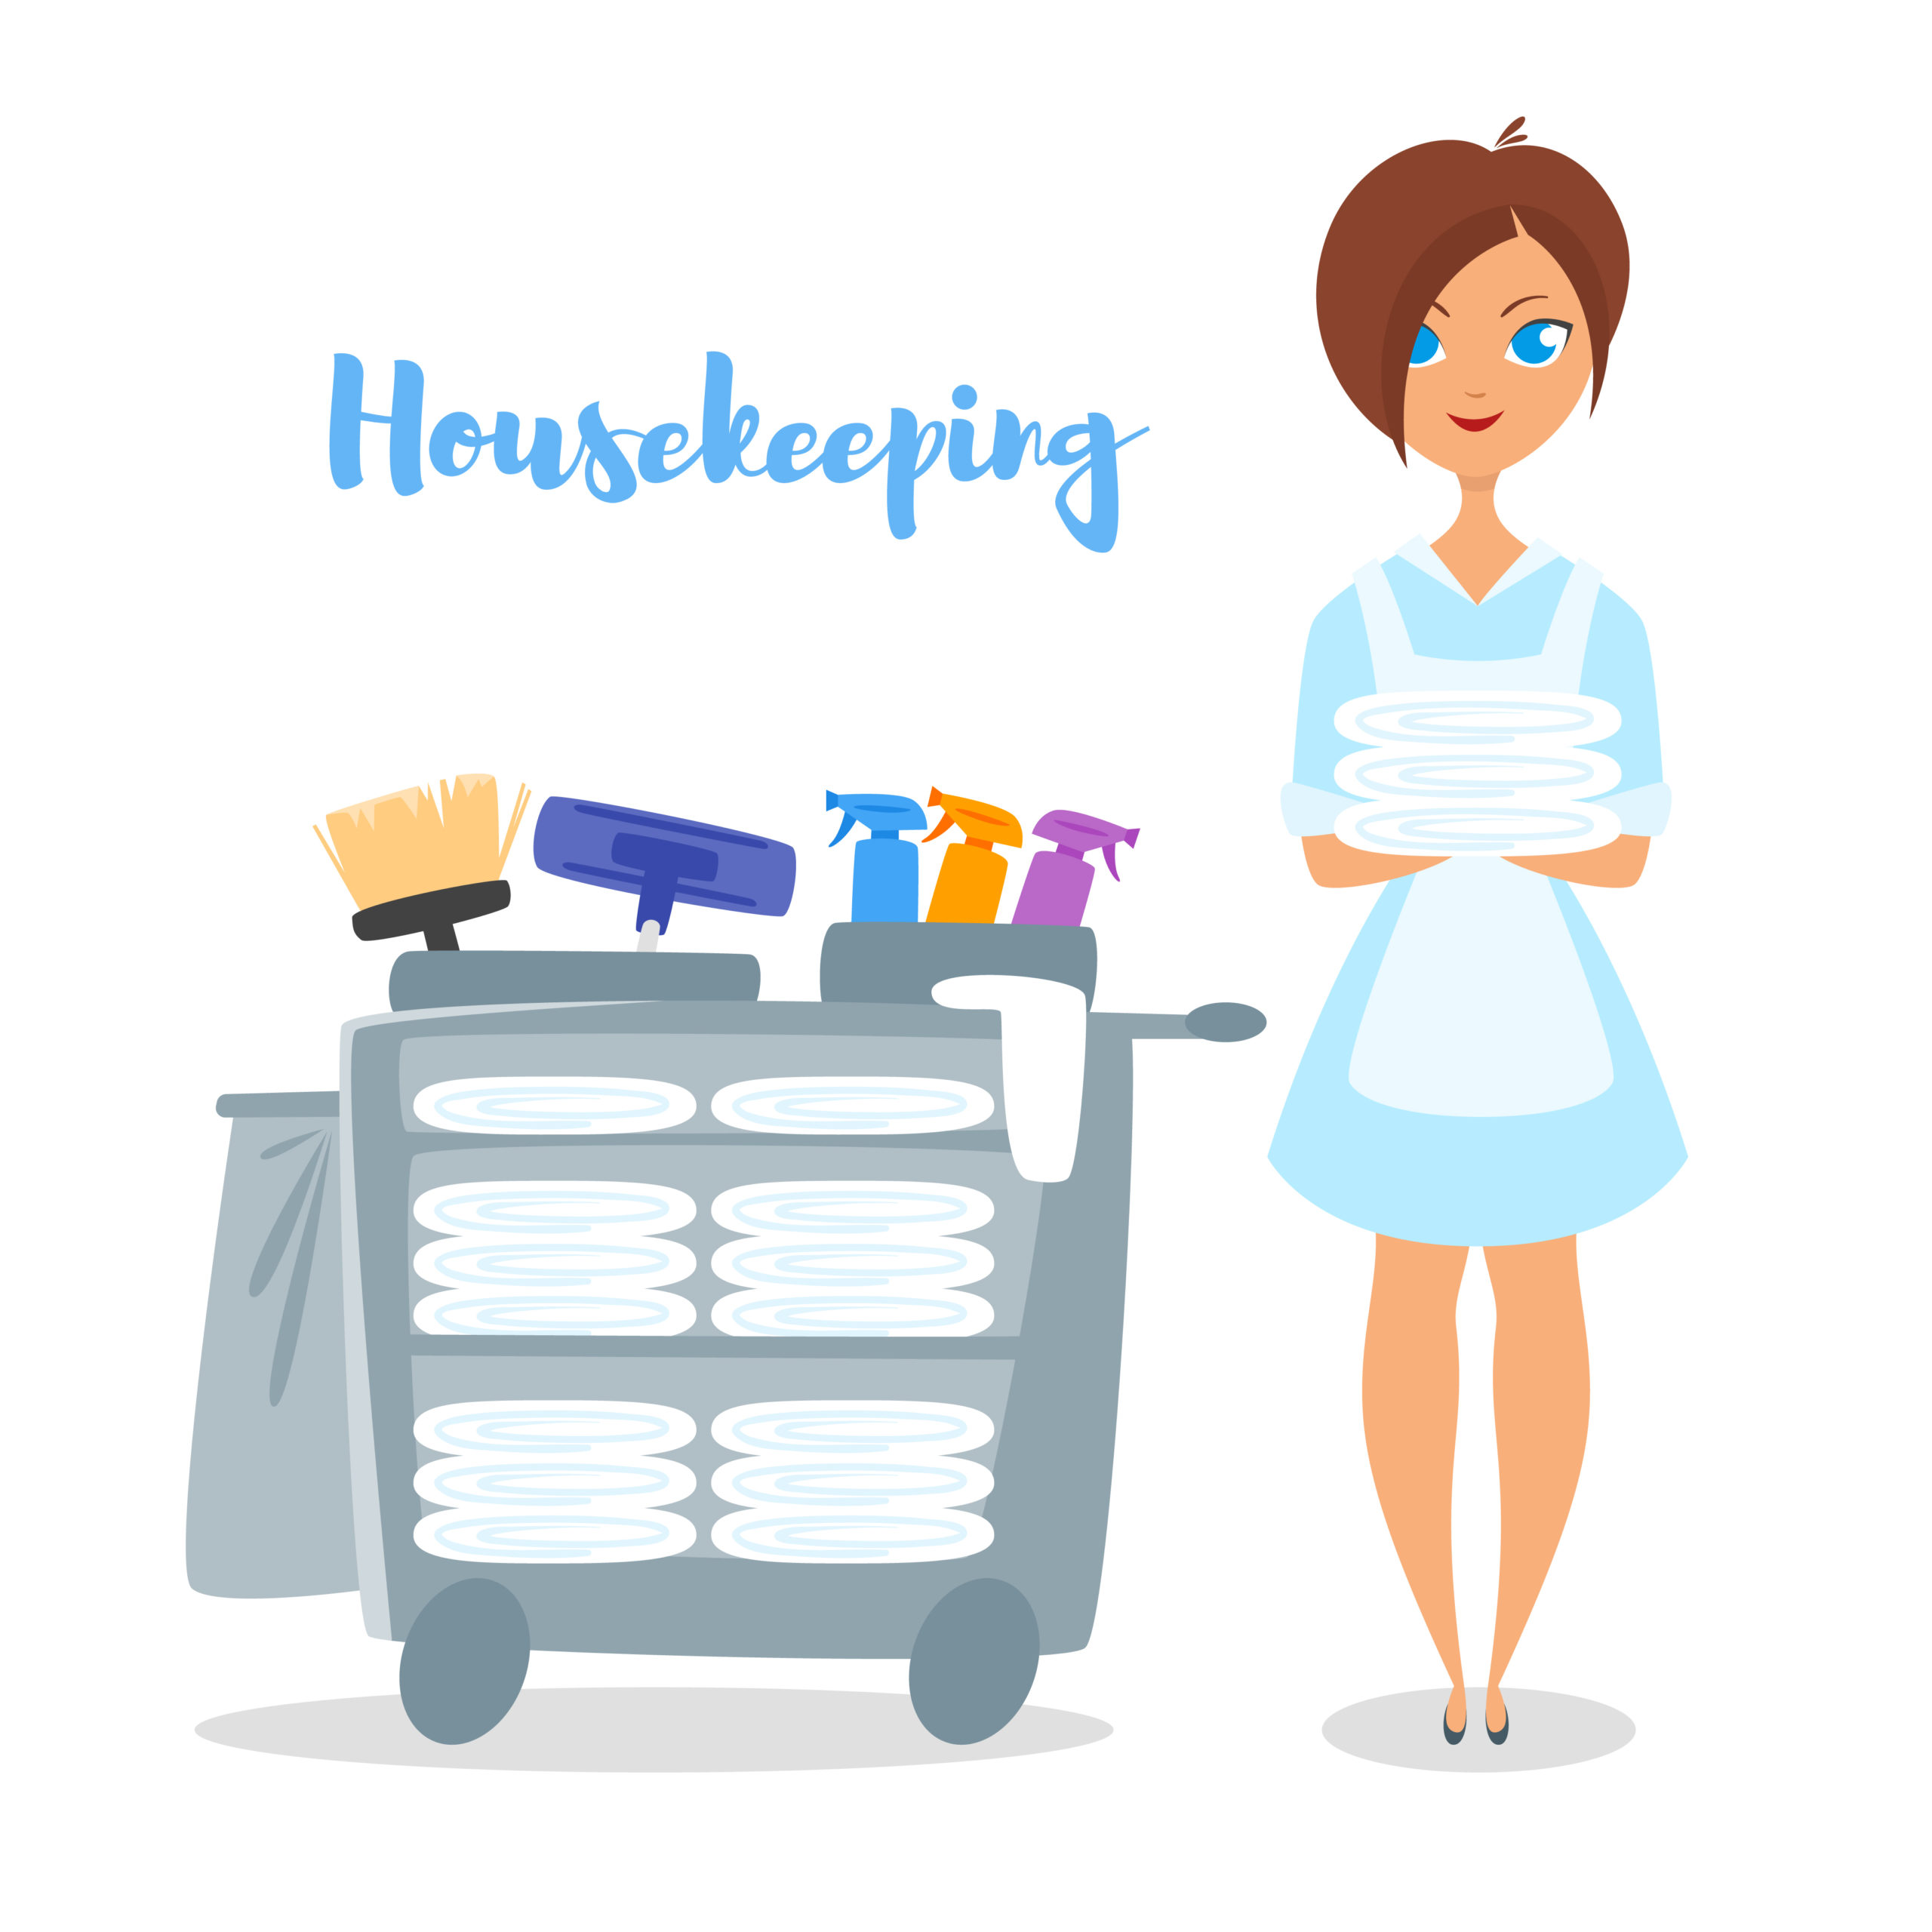 Housekeeping & Cleaning Jobs